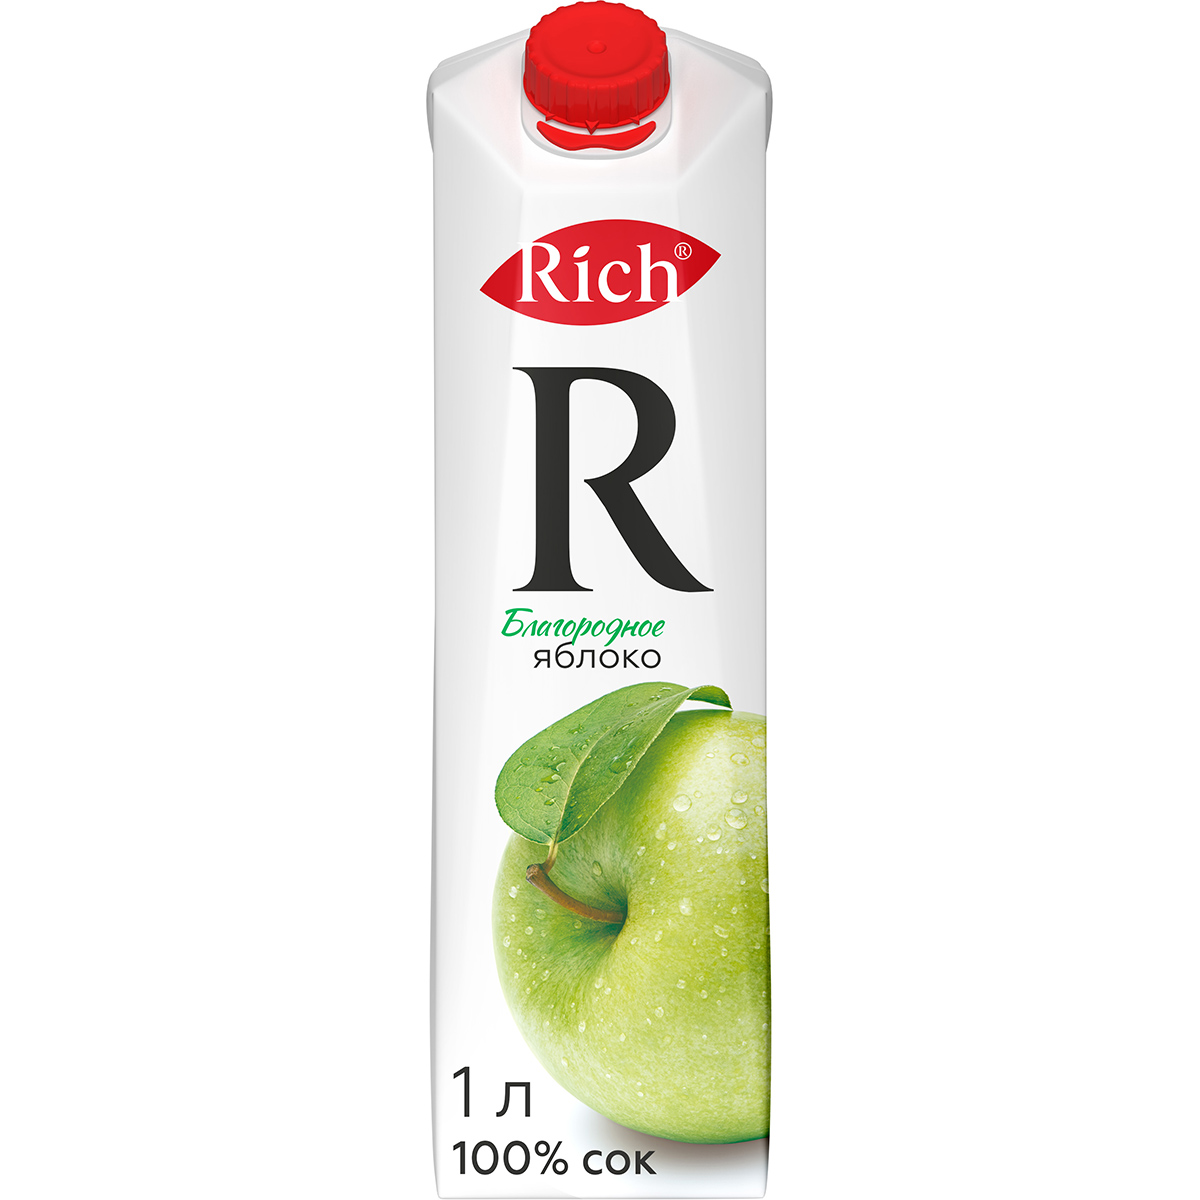 Сок Rich яблочный осветленный 100% 1 л